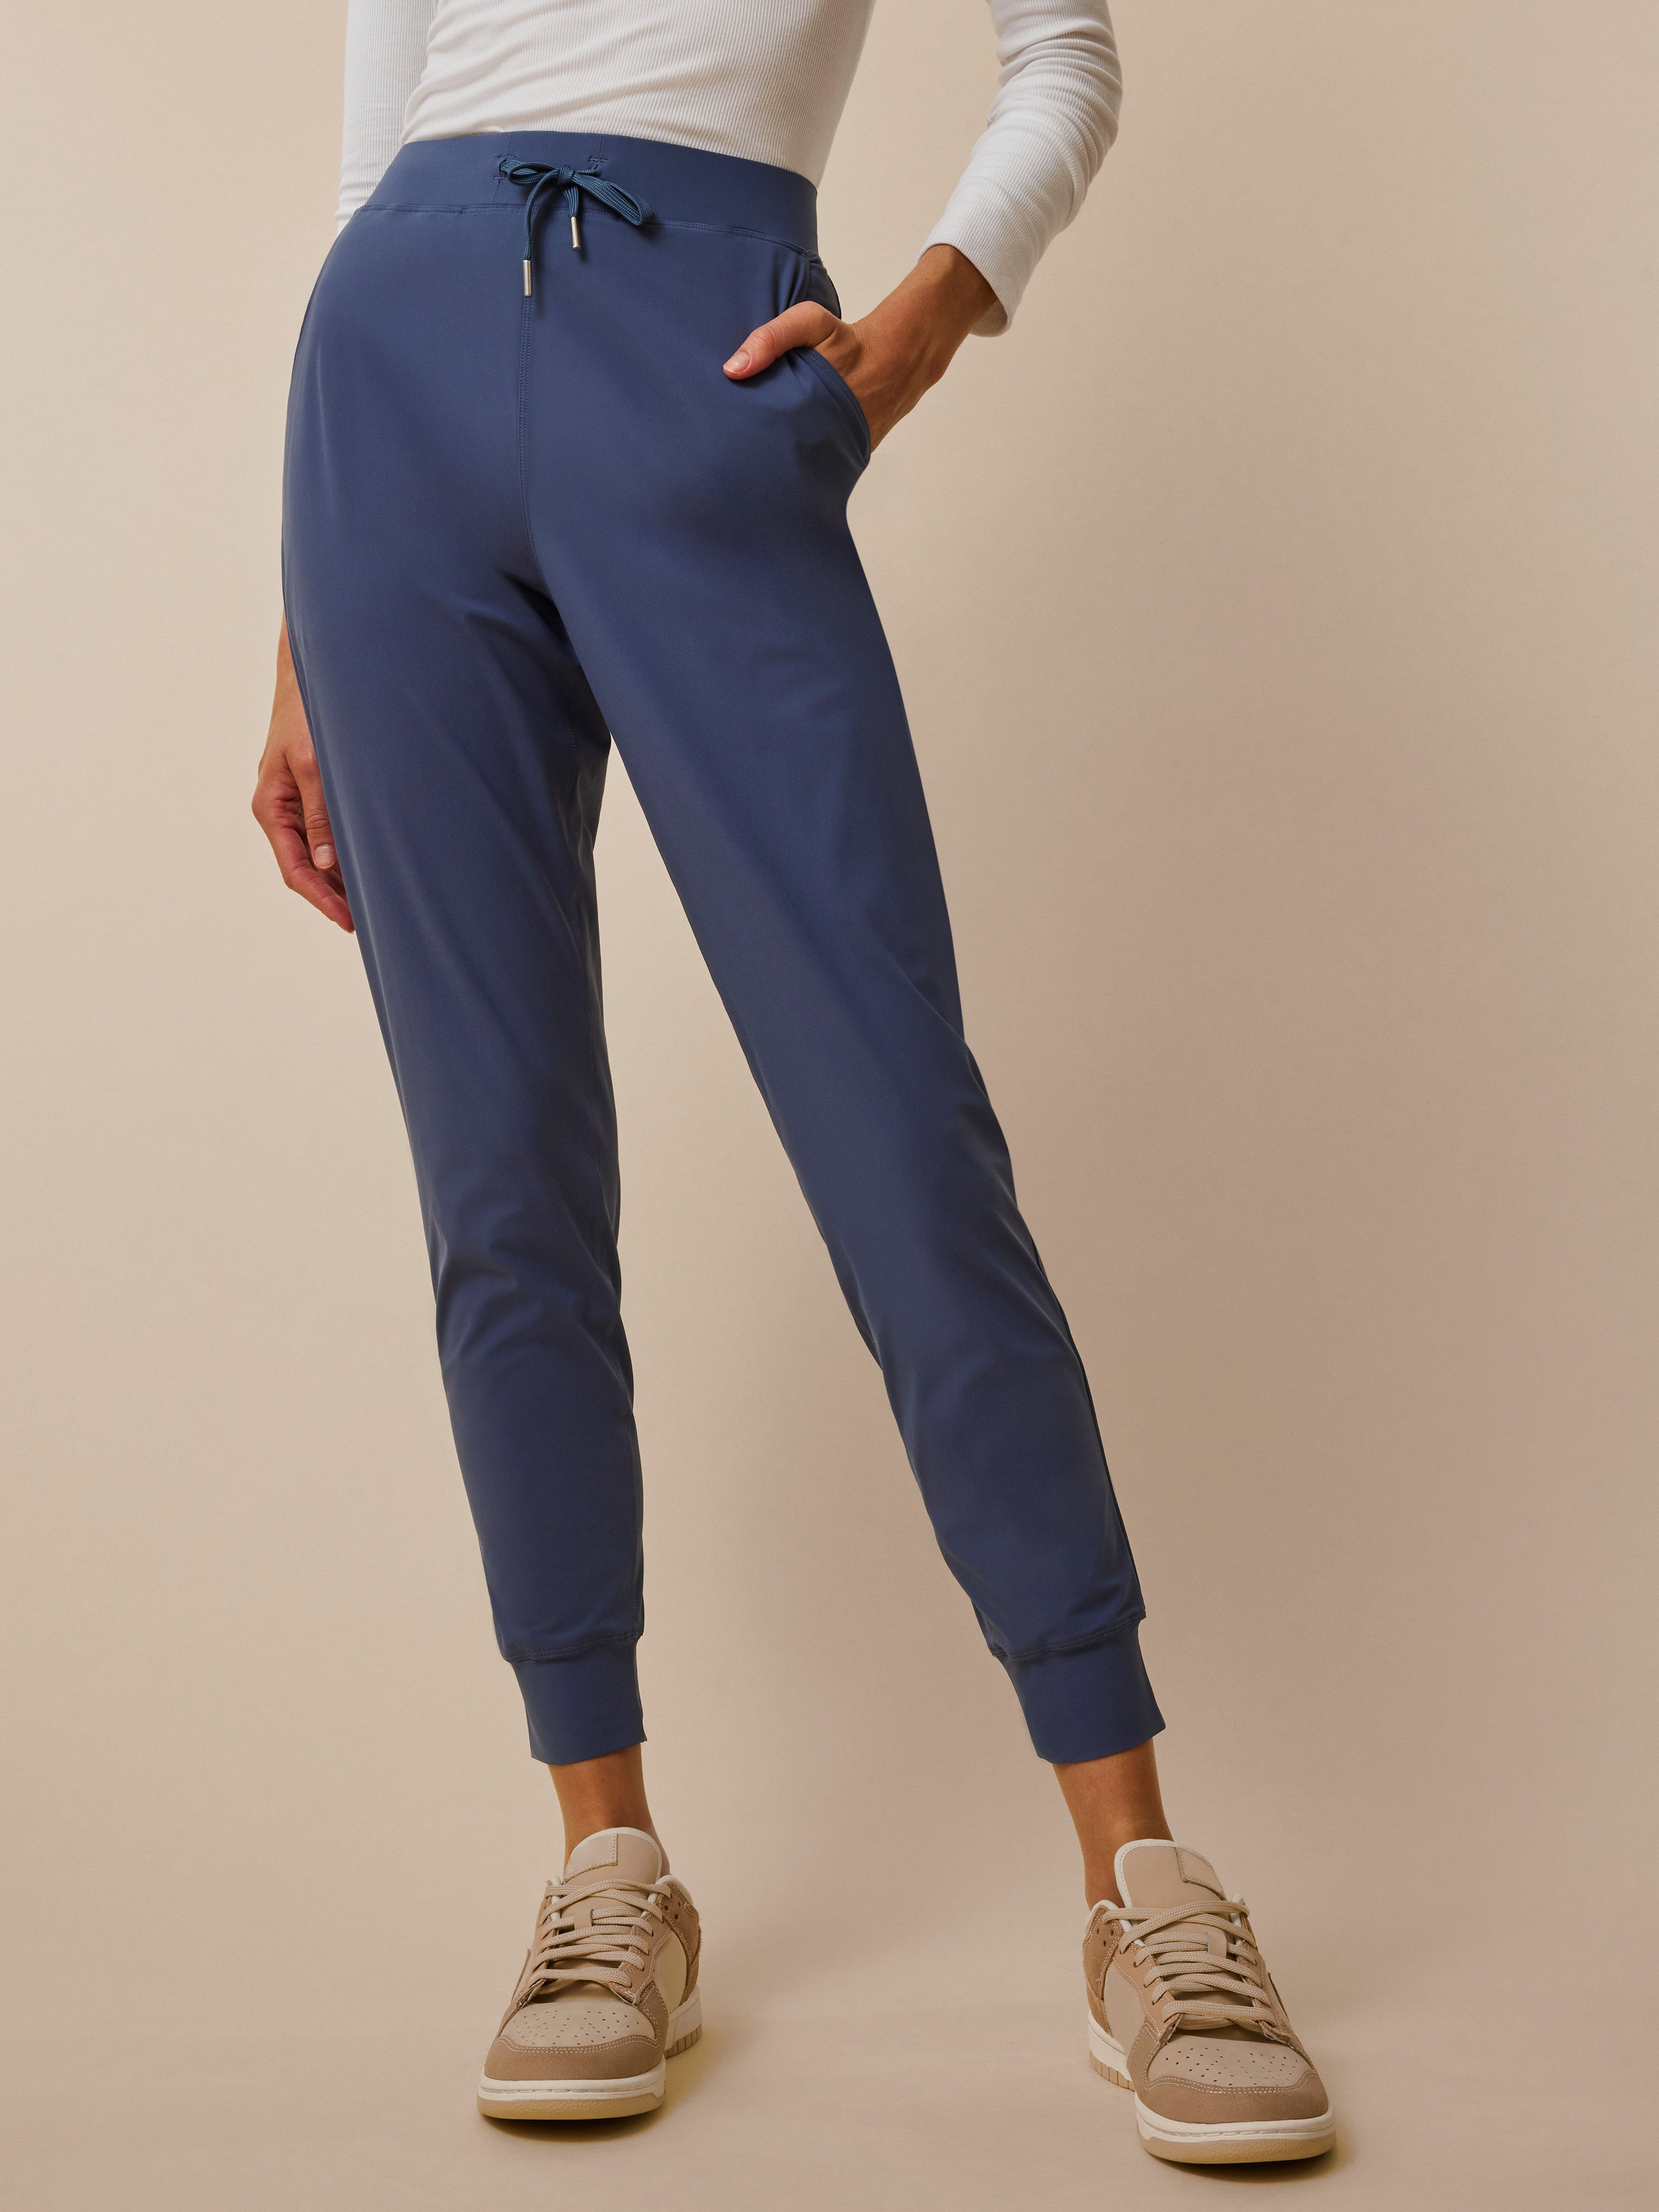 Buy Women Grey Regular Fit Solid Casual Jogger Pants Online - 610124 |  Allen Solly